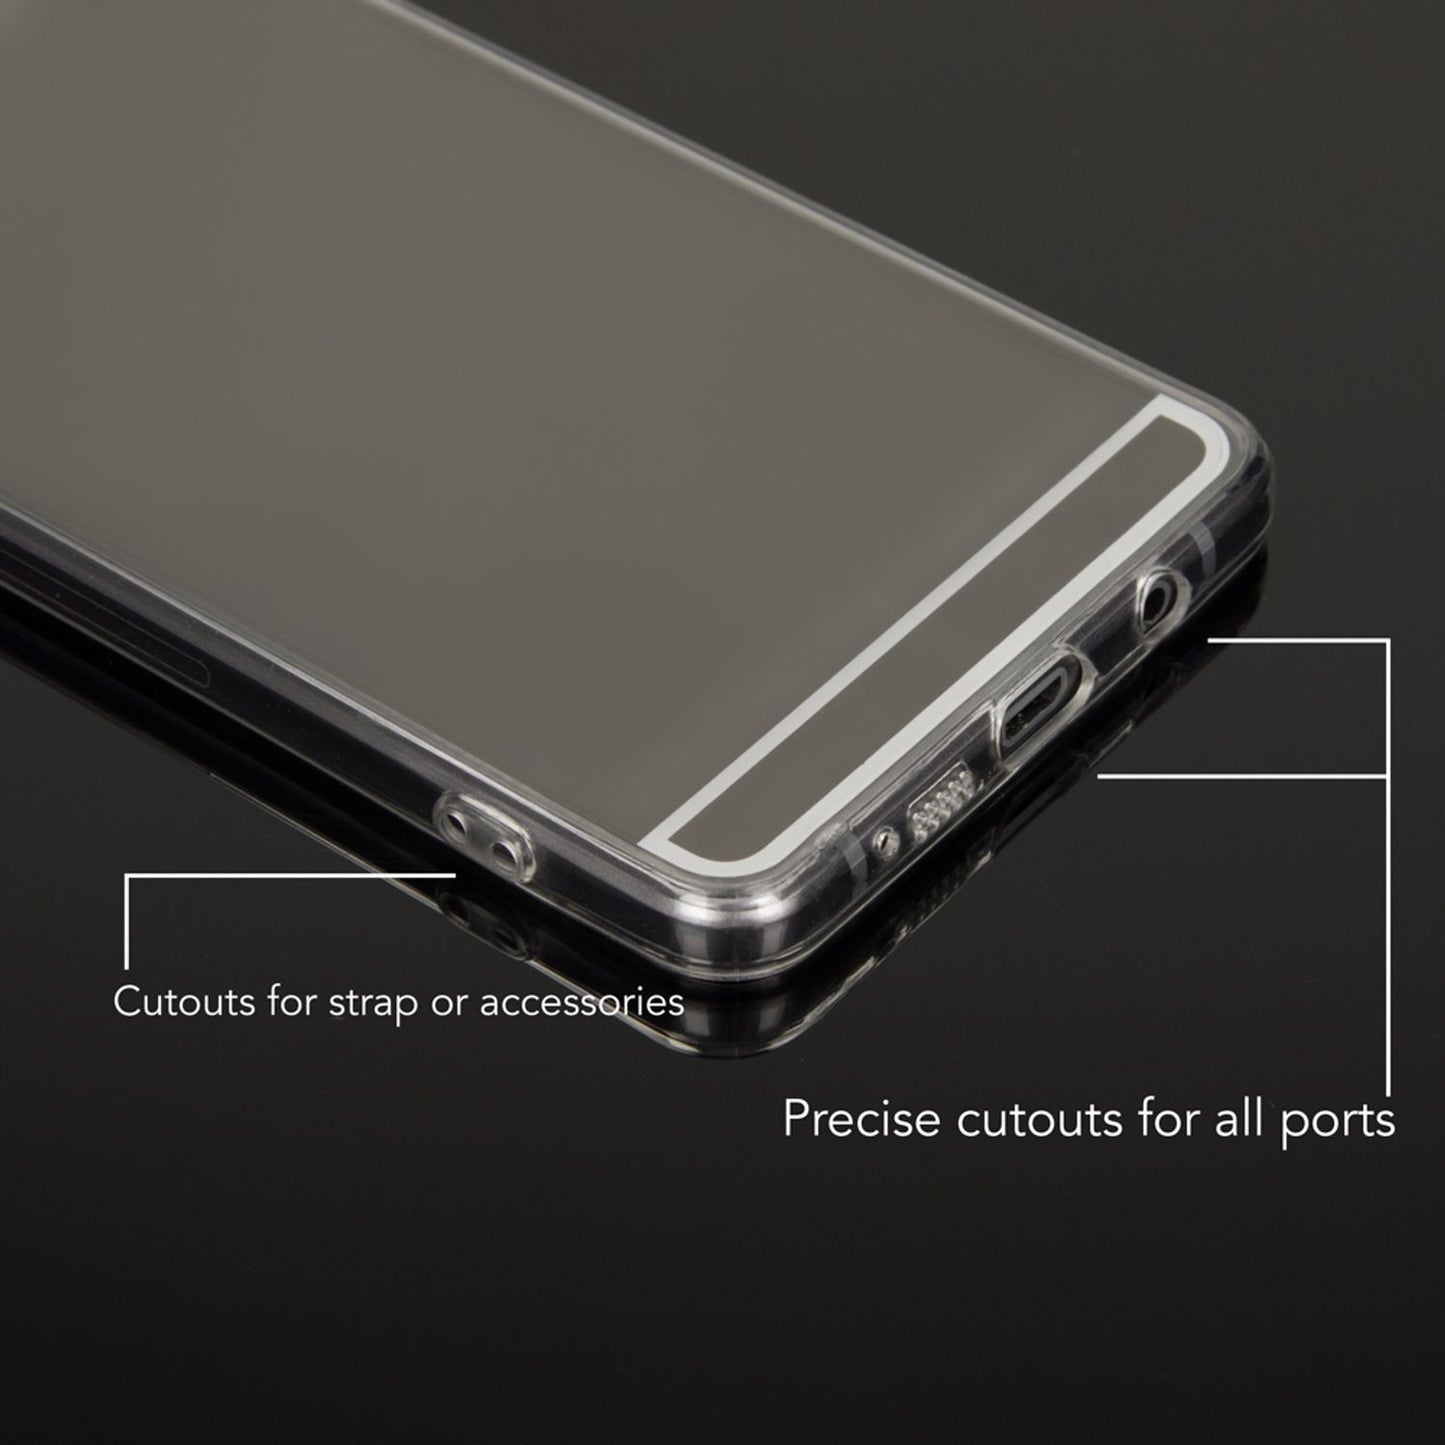 Samsung Galaxy A3 2016 Spiegel Handy Hülle von NALIA, Mirror Case Cover Schutz